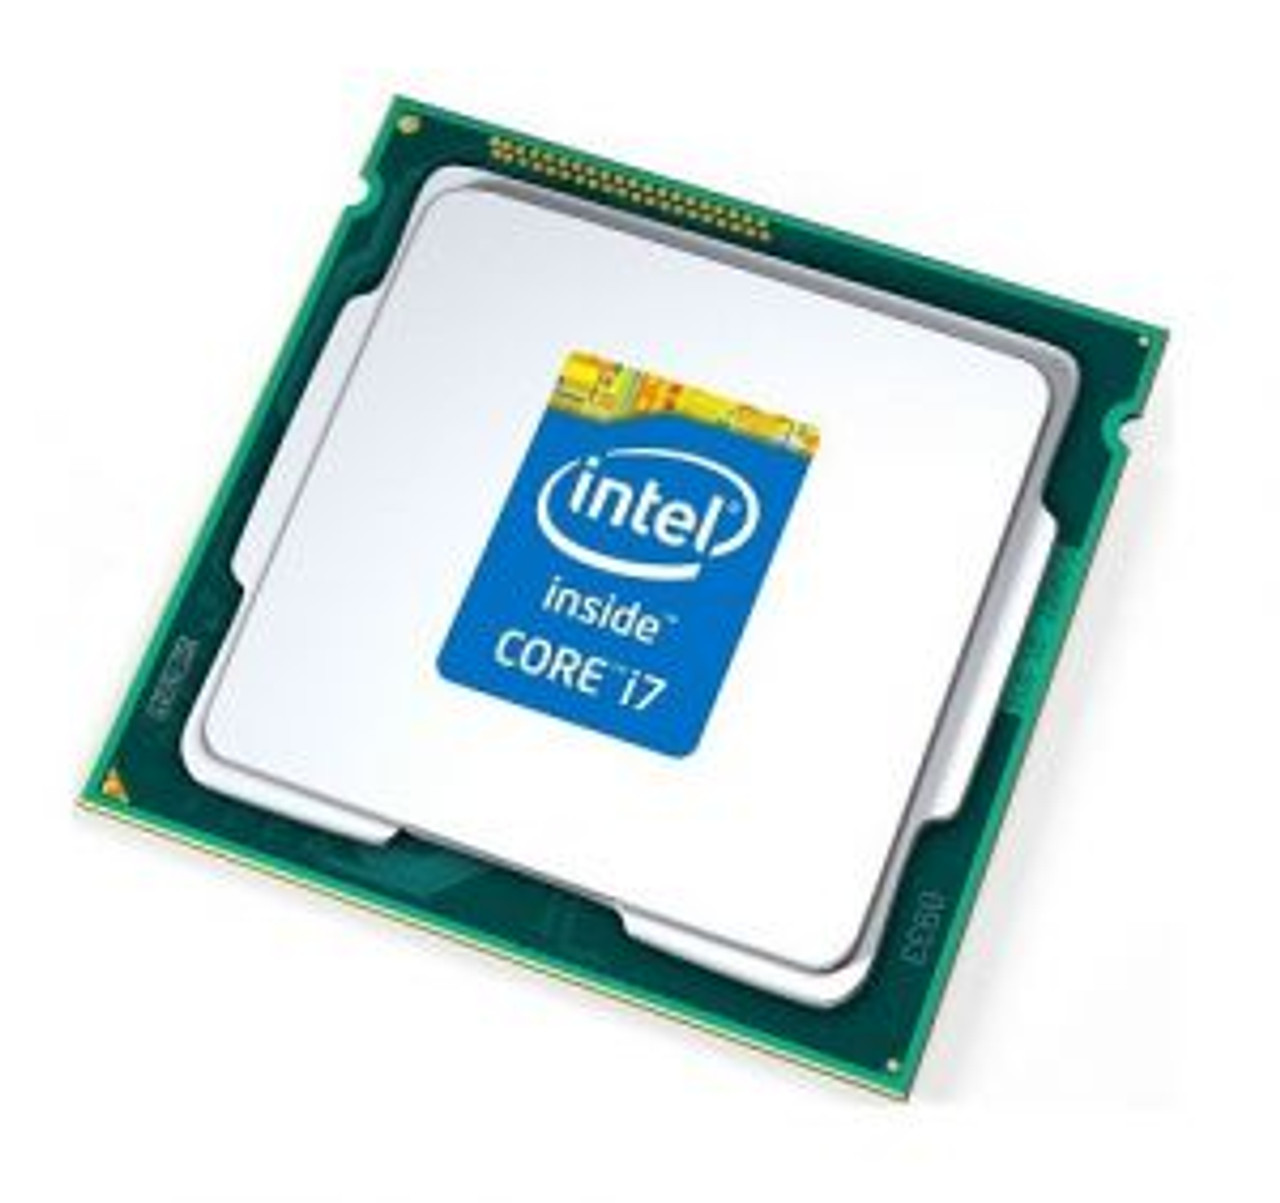 SLBLG Intel Core i7 Desktop I7-860S 4 Core 2.53GHz LGA 1156 Desktop Processor